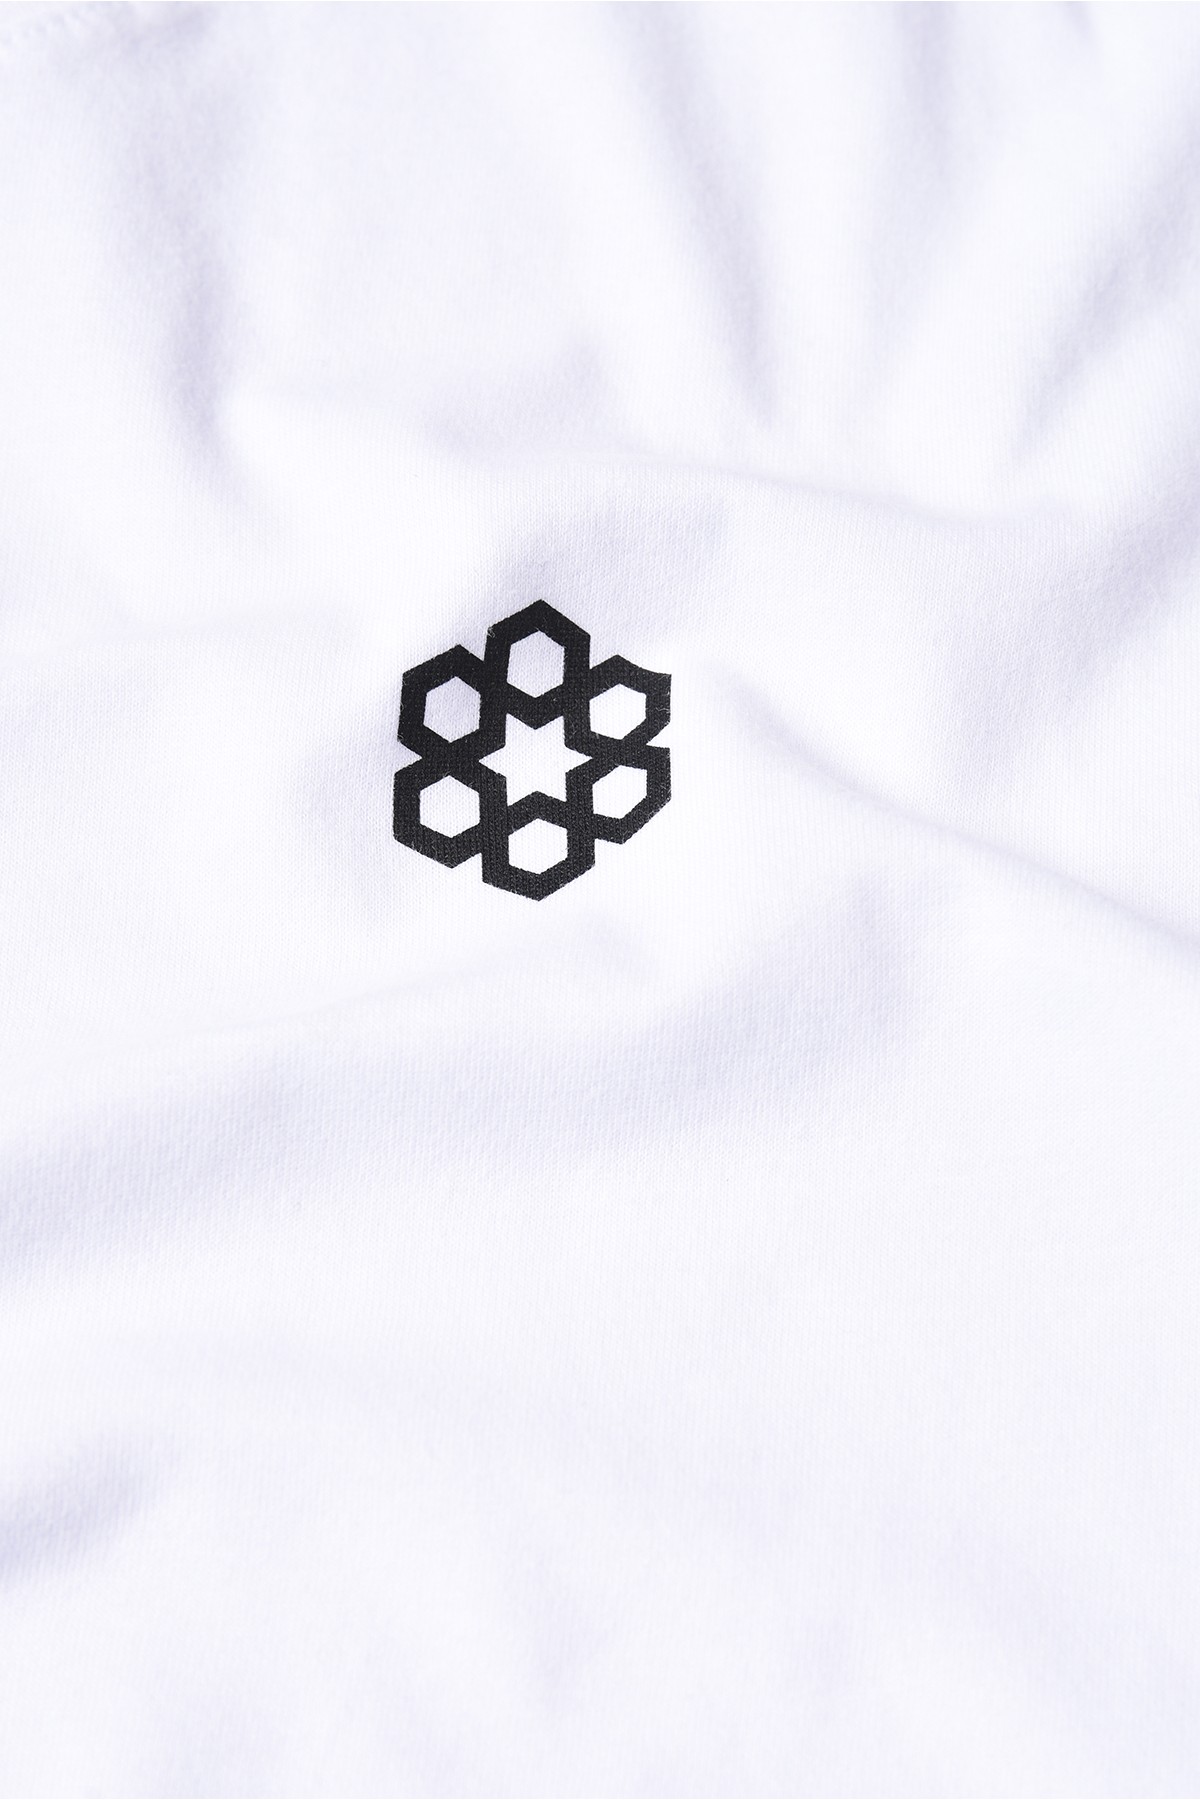 Dembu Tasarım Pamuk Beyaz T-shirt